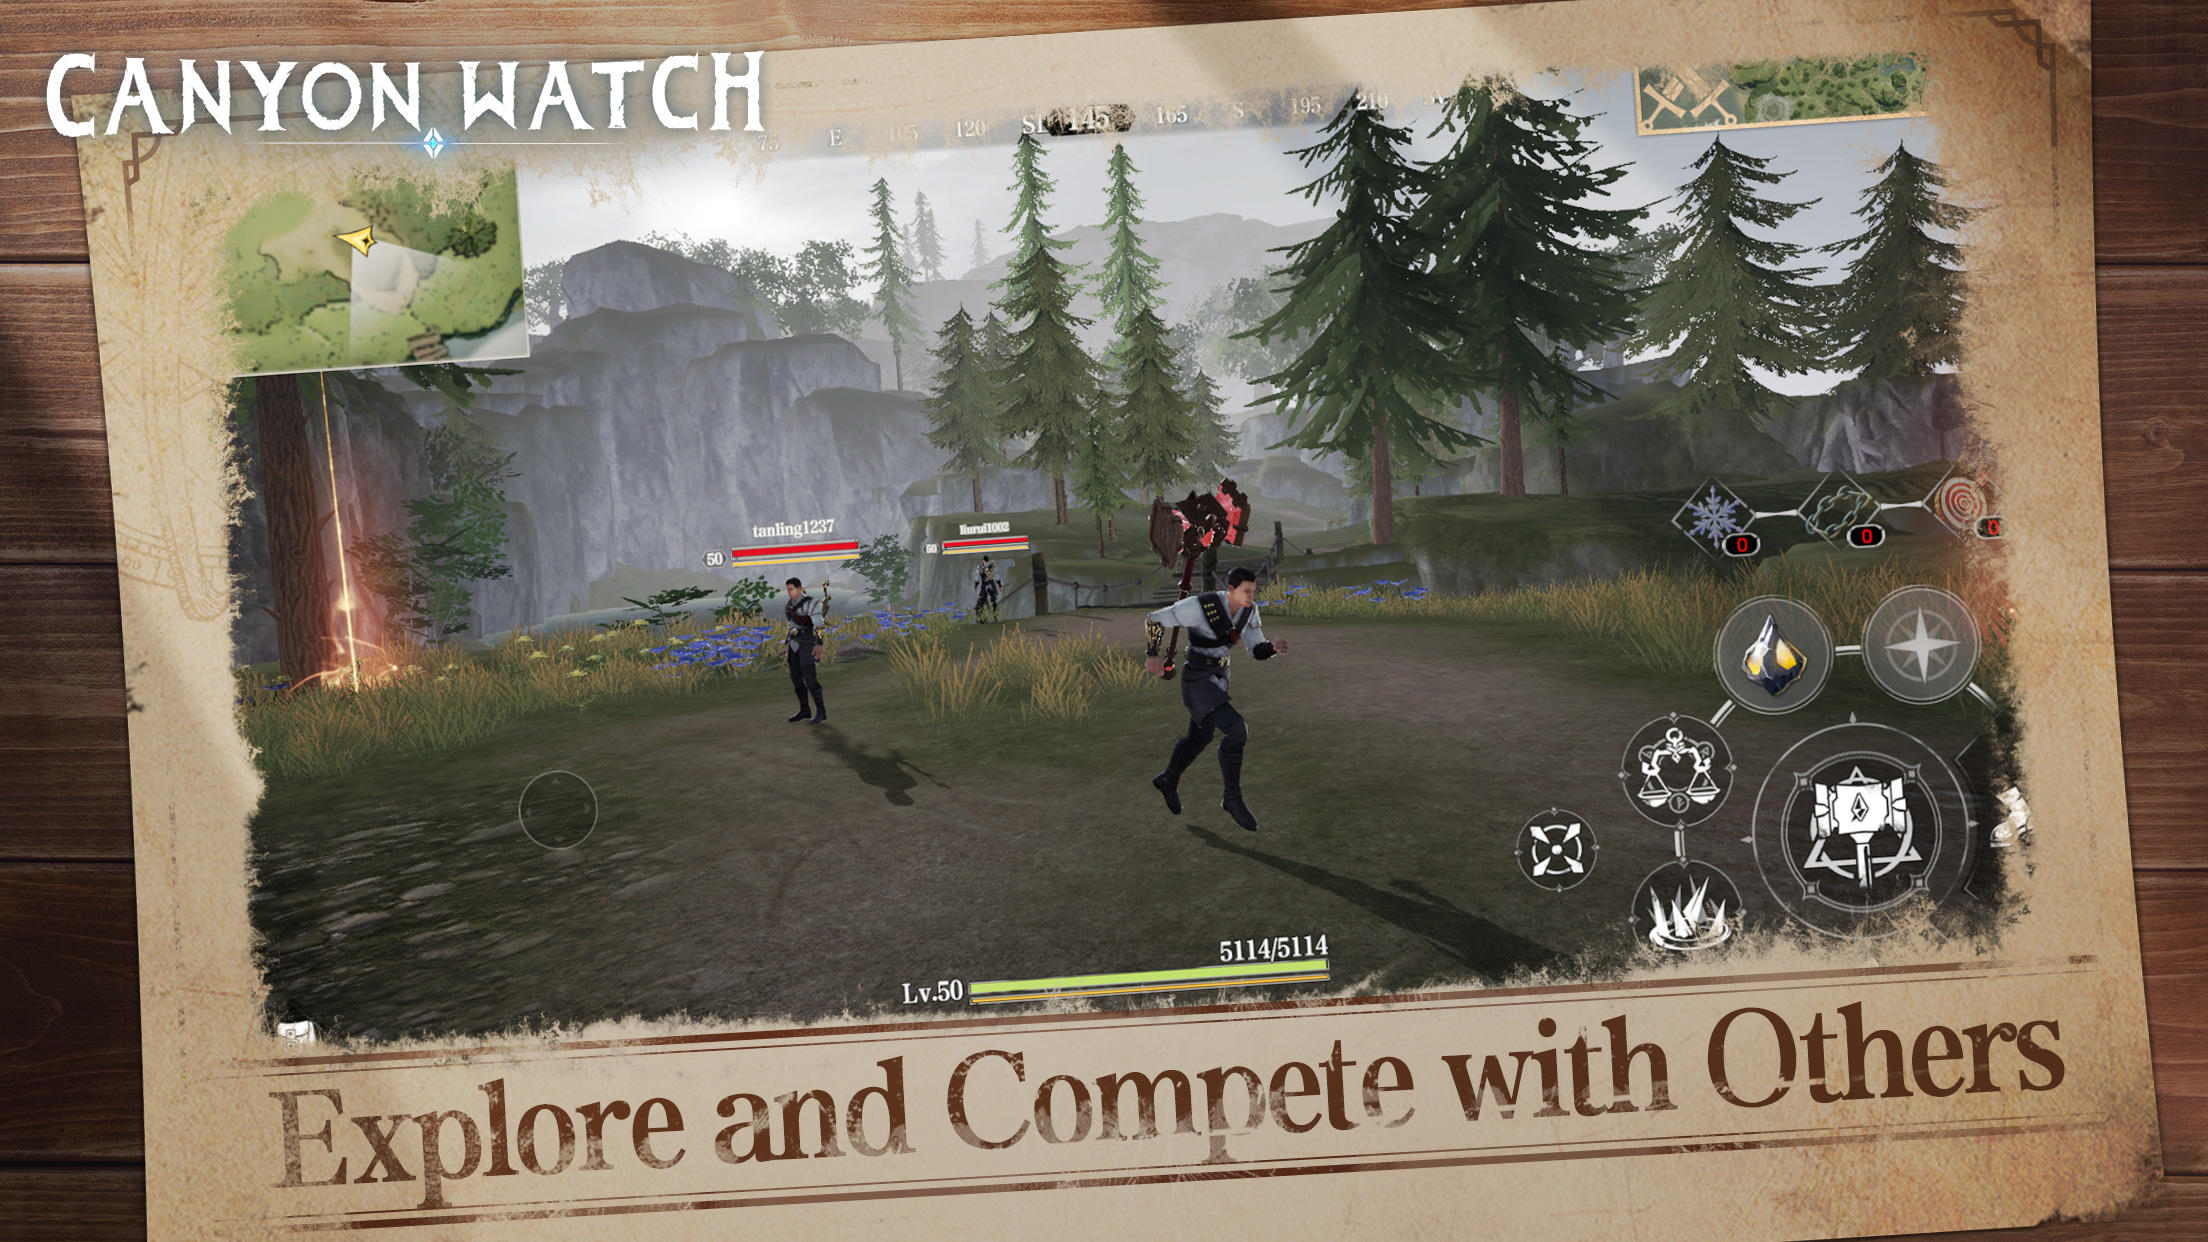 Canyon Watch screenshot game